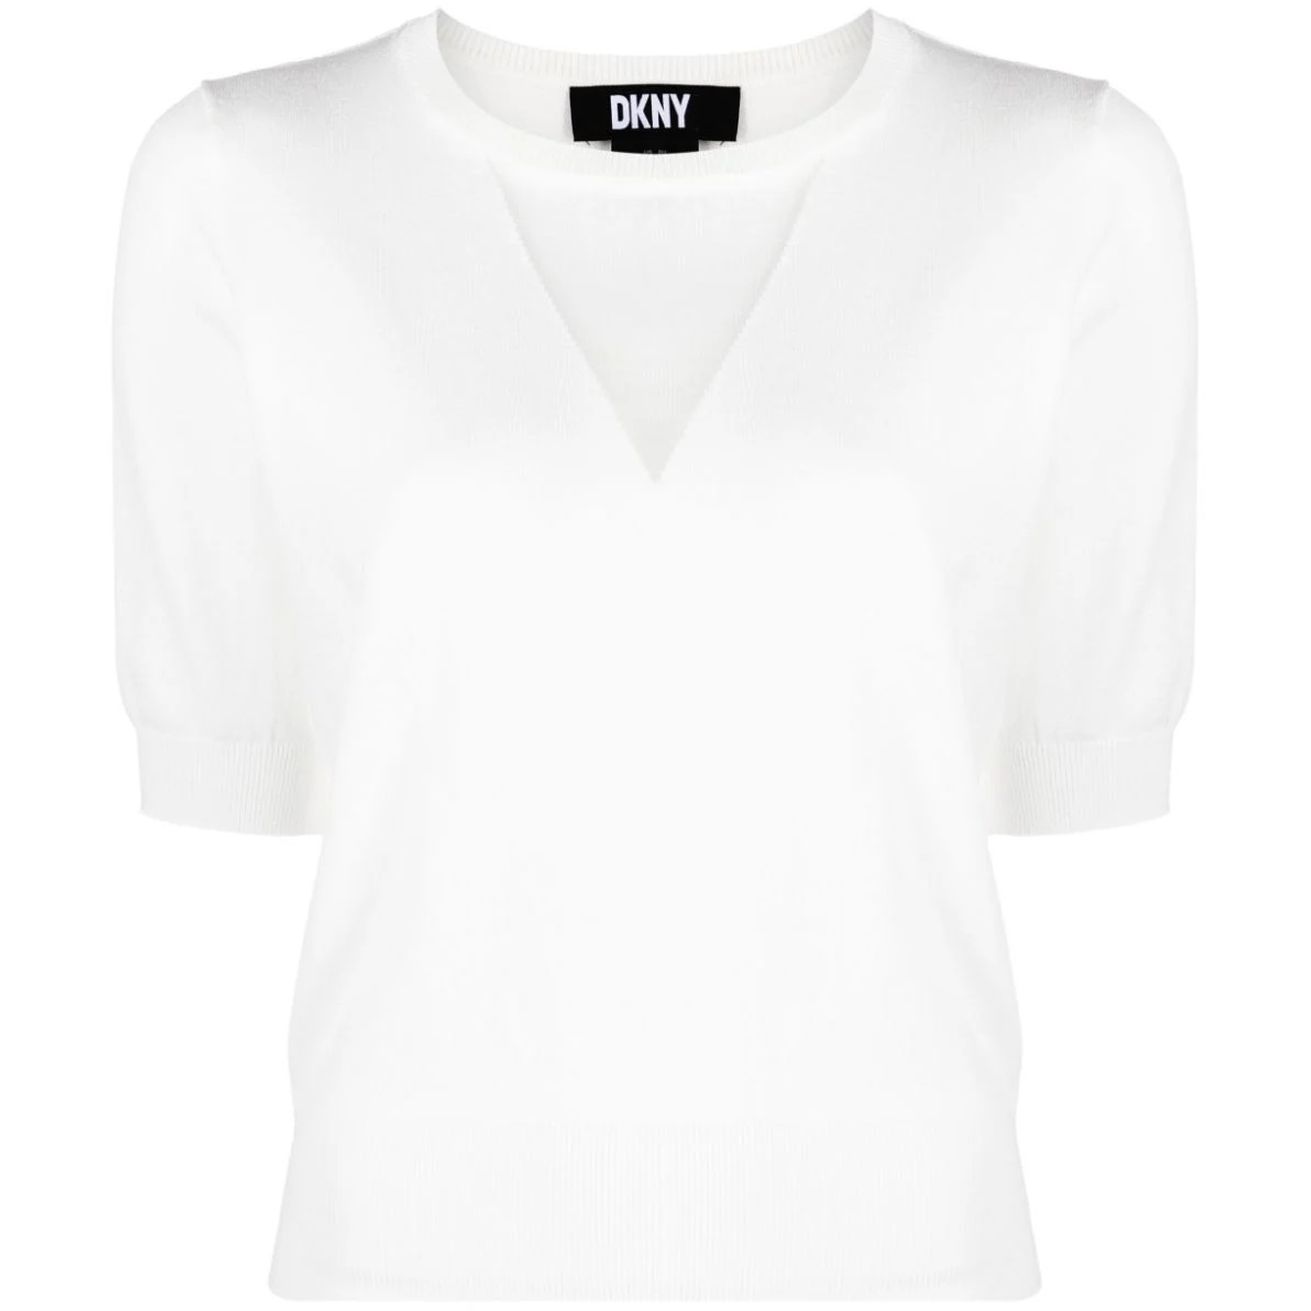 DKNY marškiniai moterims, Balta, S/s mesh v crewneck